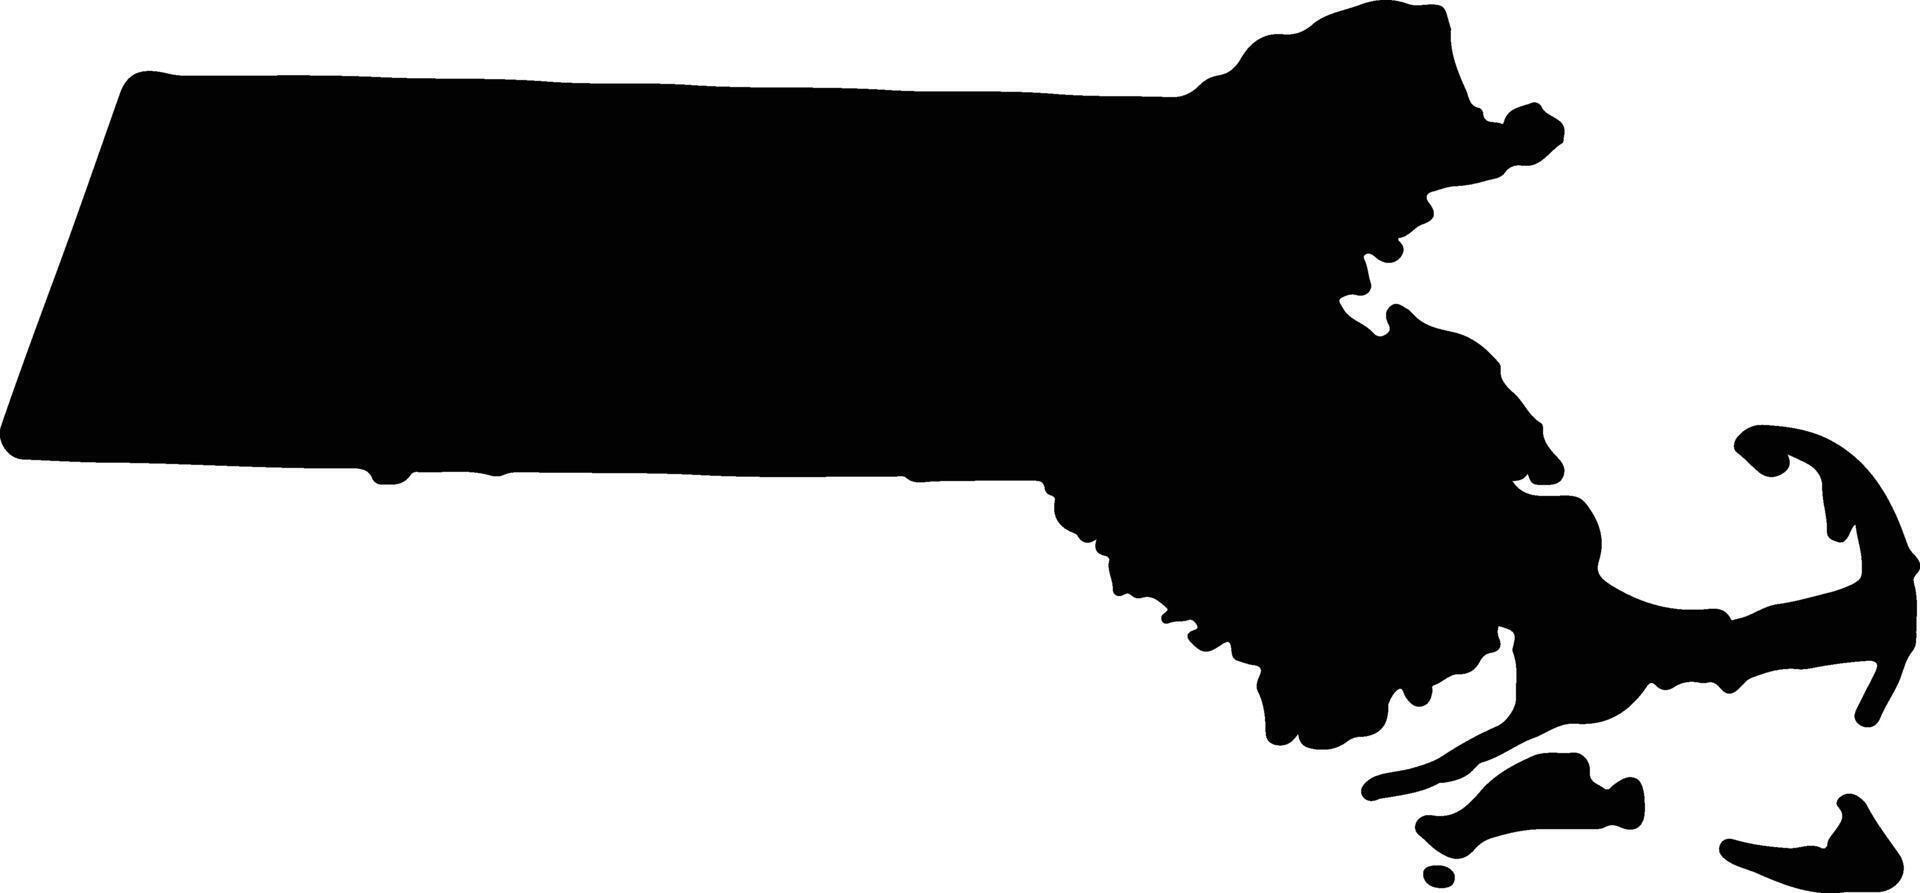 Massachusetts Unidos estados do América silhueta mapa vetor